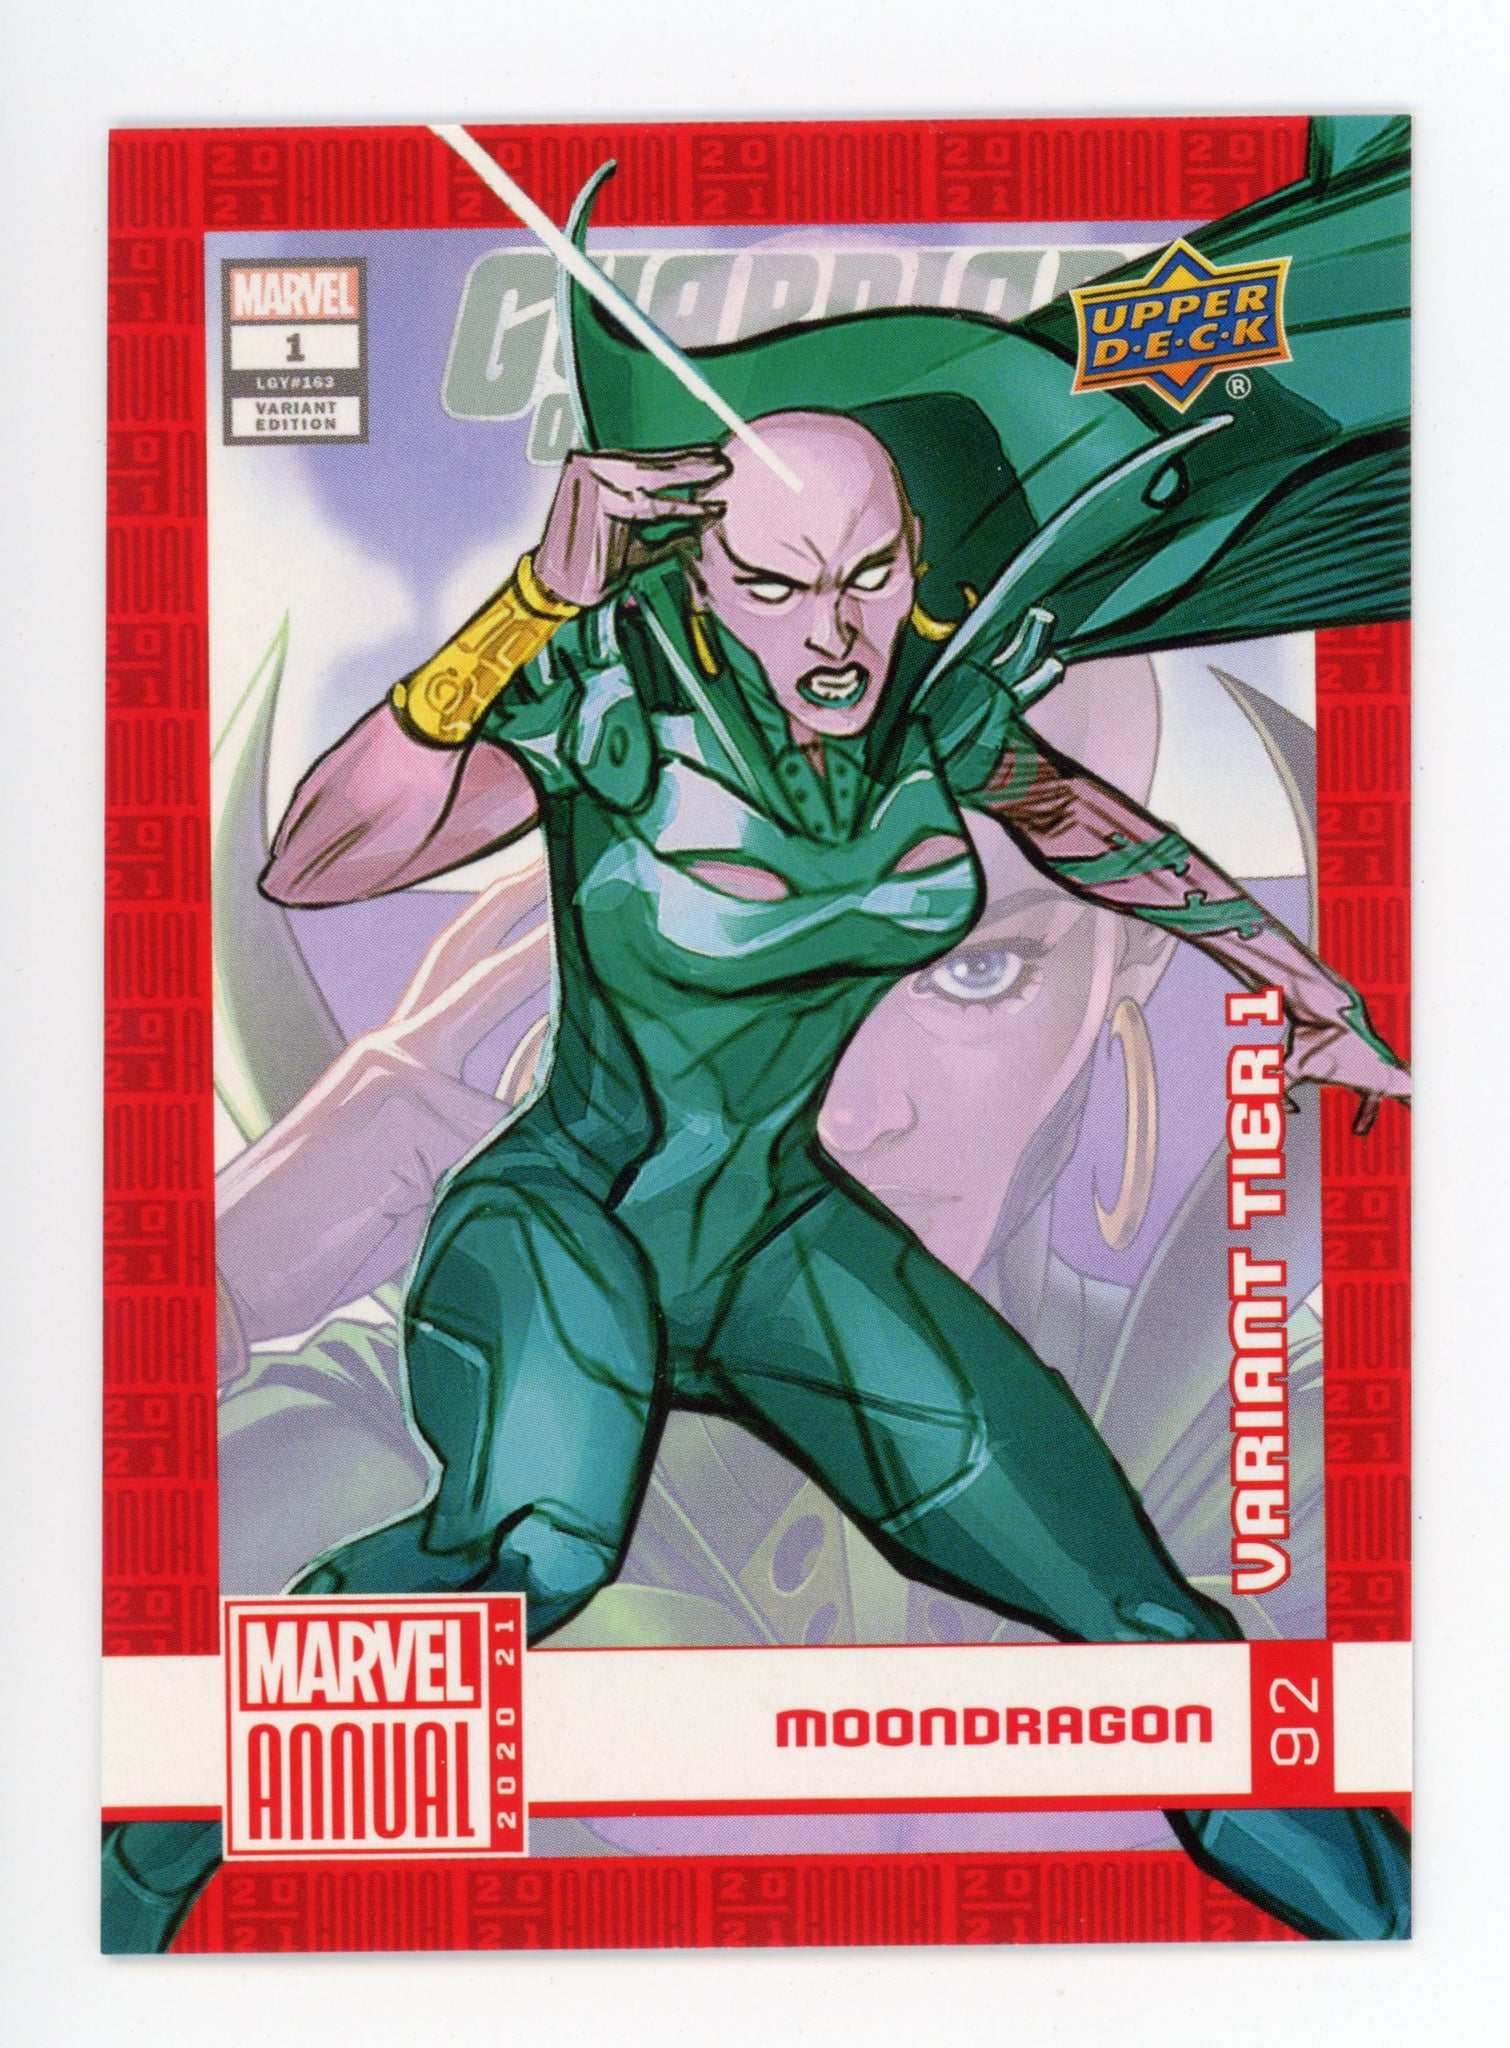 2020-2021 Moondragon Variant Tier 1 Upper Deck Marvel Annual # 92